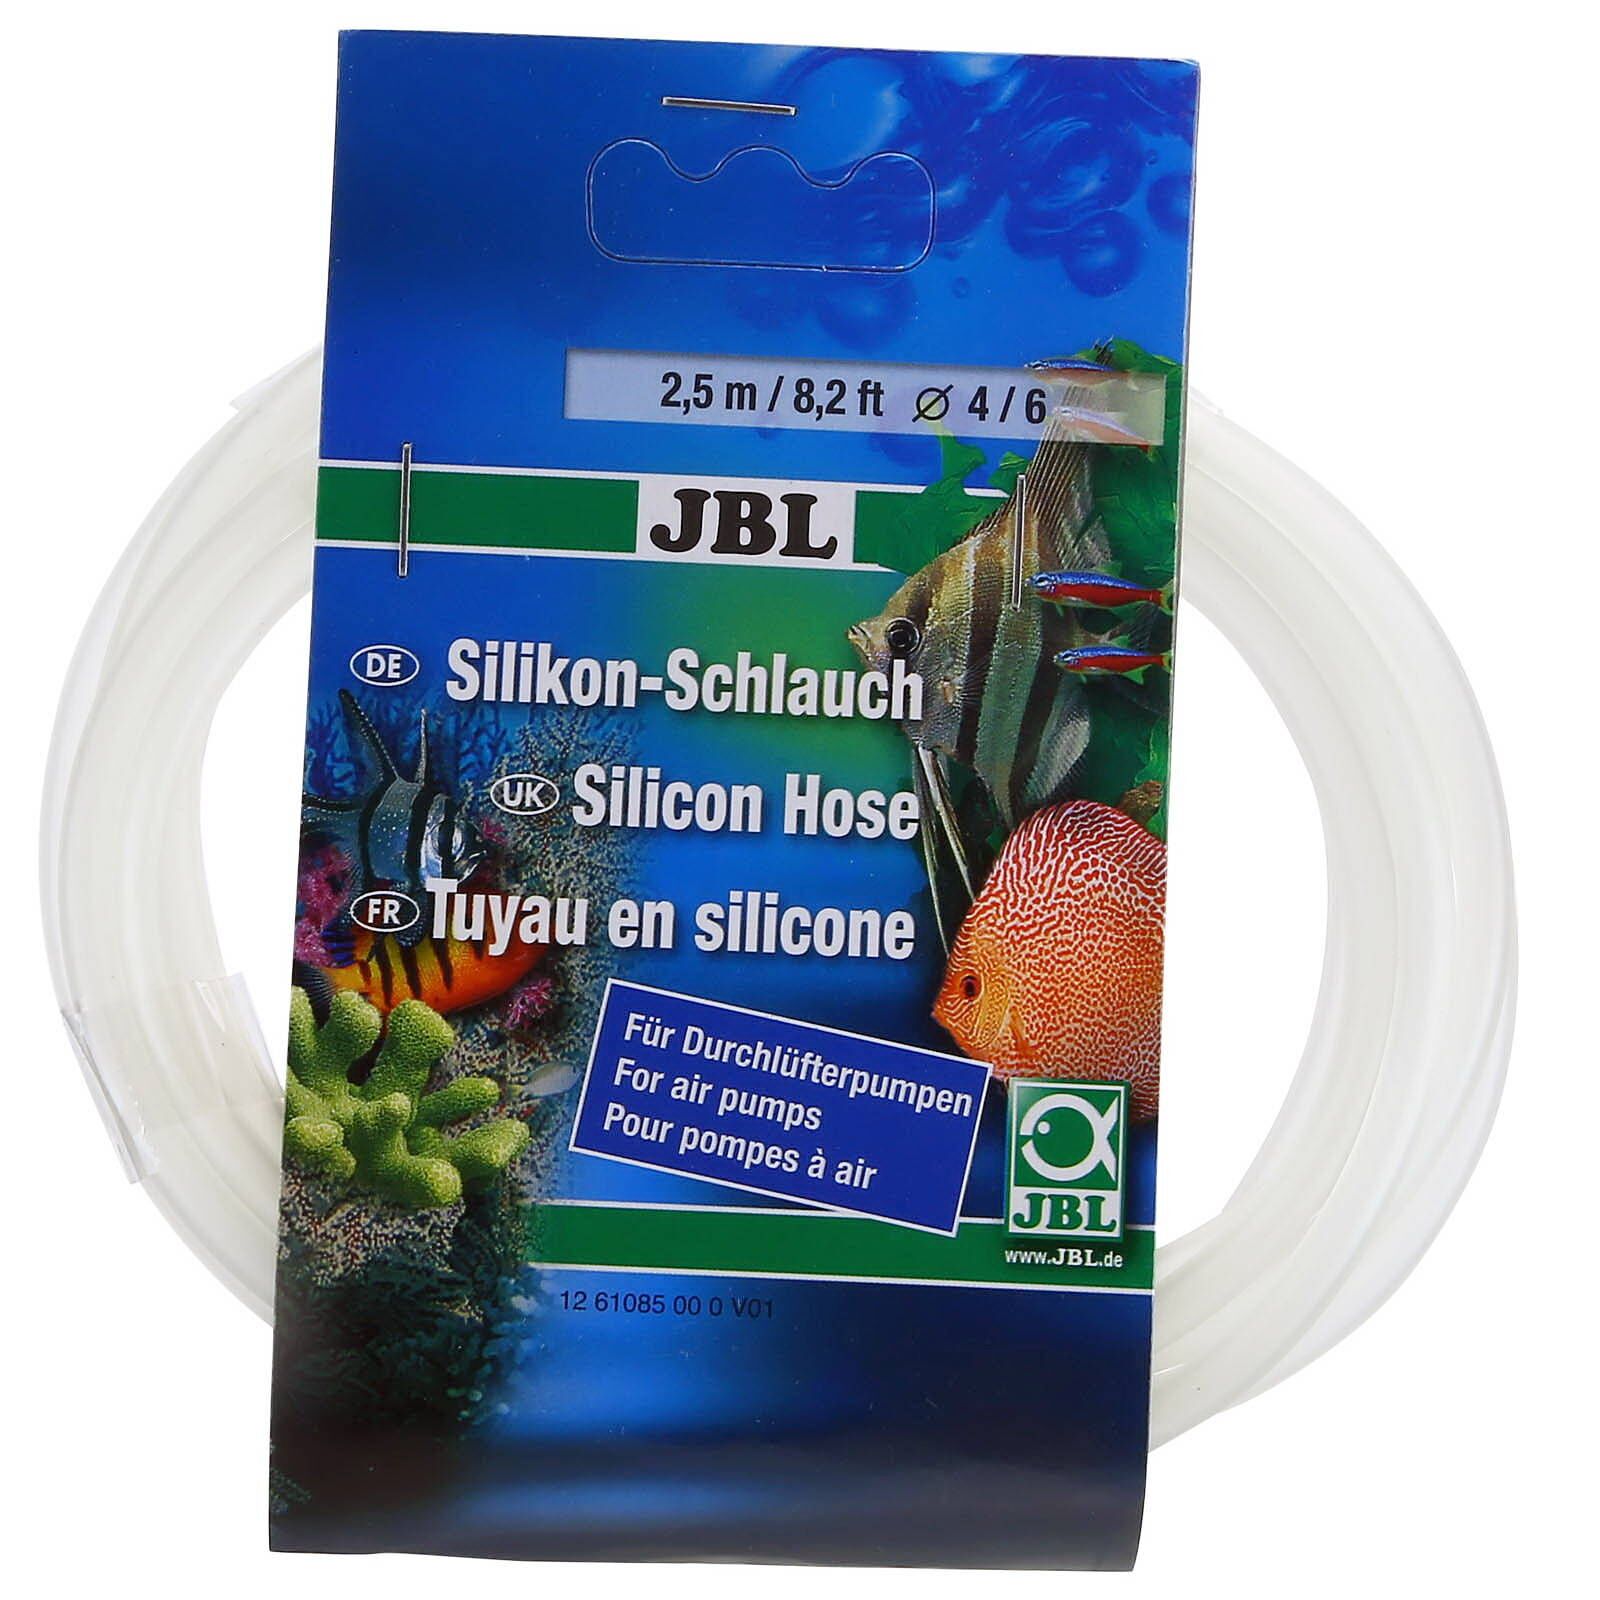 JBL - Silicon tubing for glassware - 2,5 m